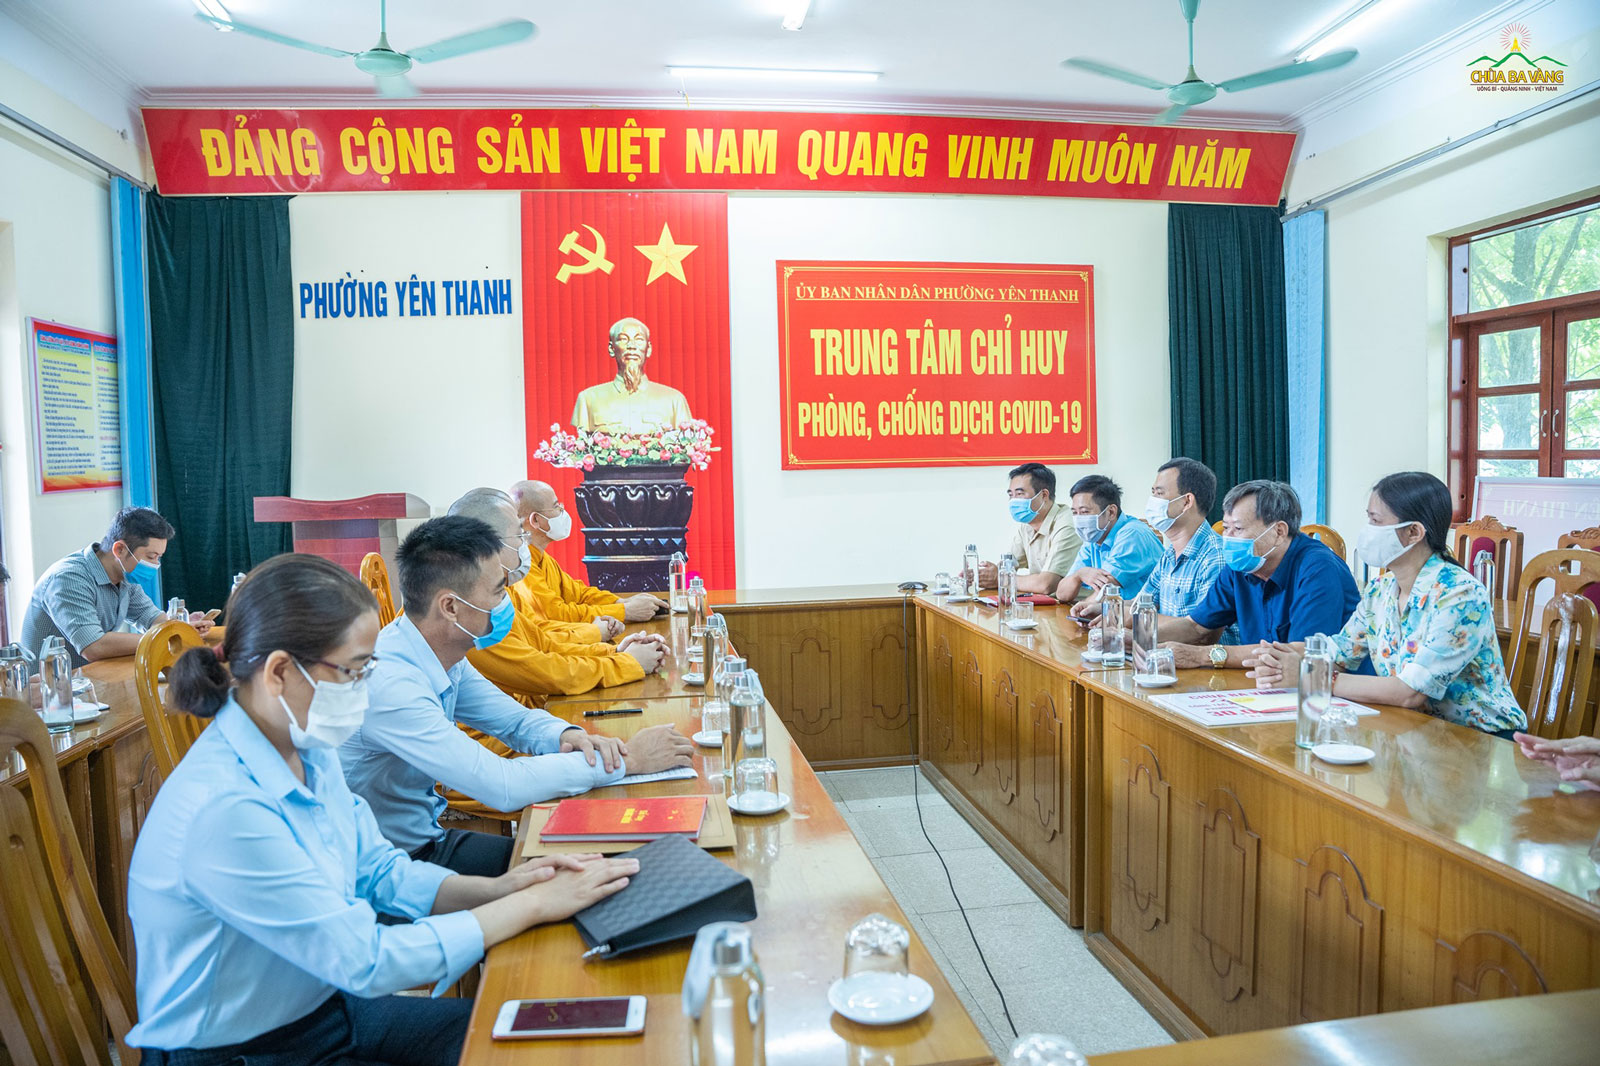 Sư Phụ cùng chư Tăng chùa Ba Vàng tại buổi gặp mặt với các lãnh đạo và cán bộ tại UBND phường Yên Thanh, TP.Uông Bí sáng ngày 24/8/2021